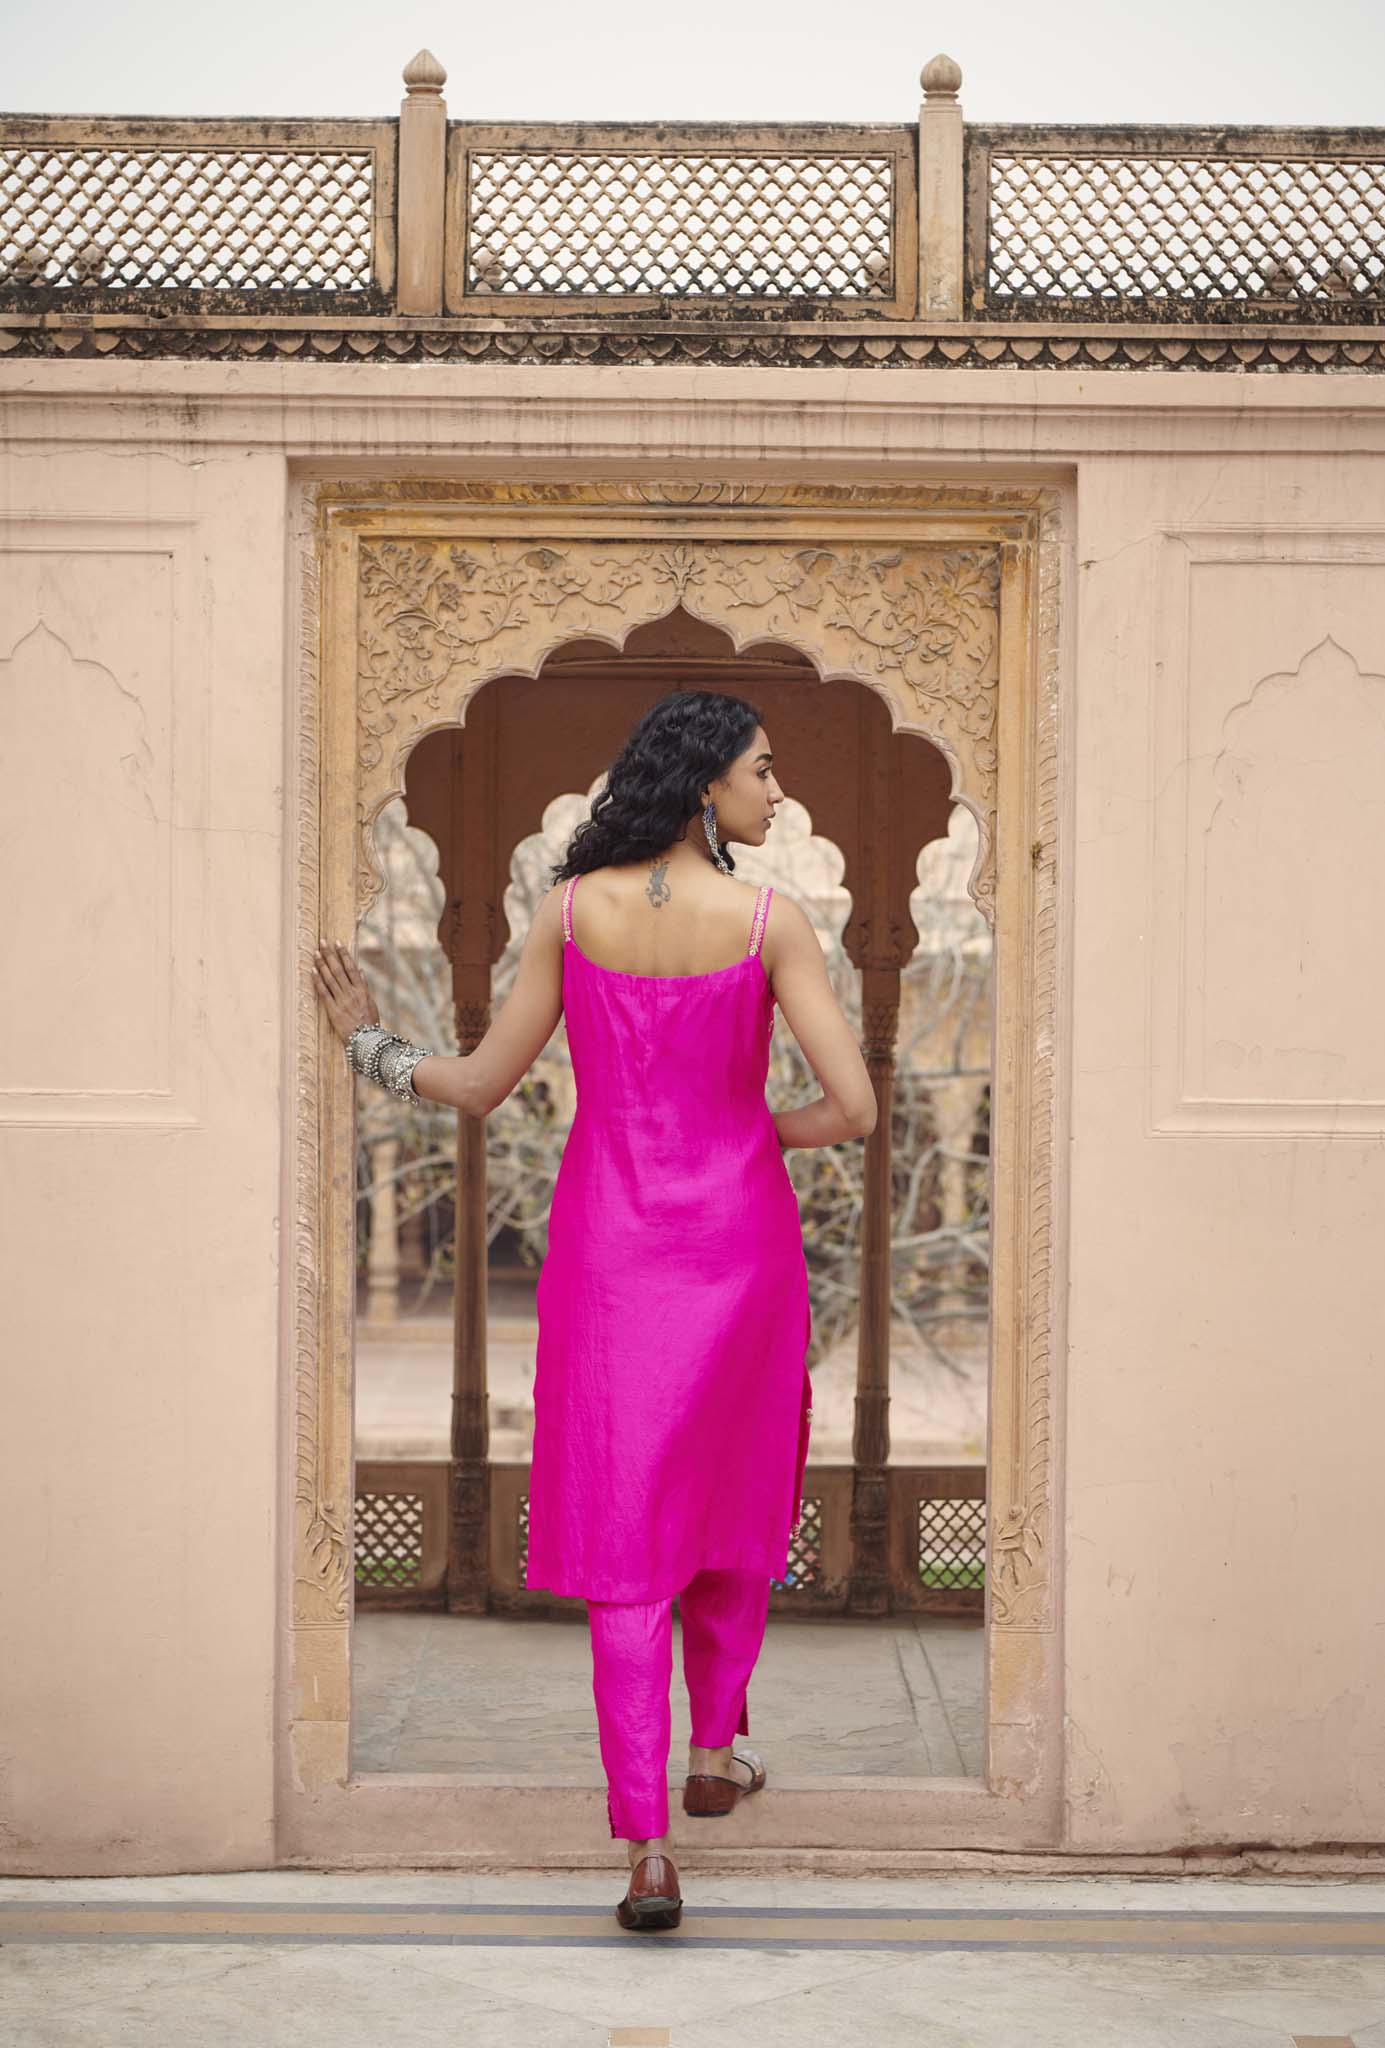 Pink Sleeveless Chandbali Suit